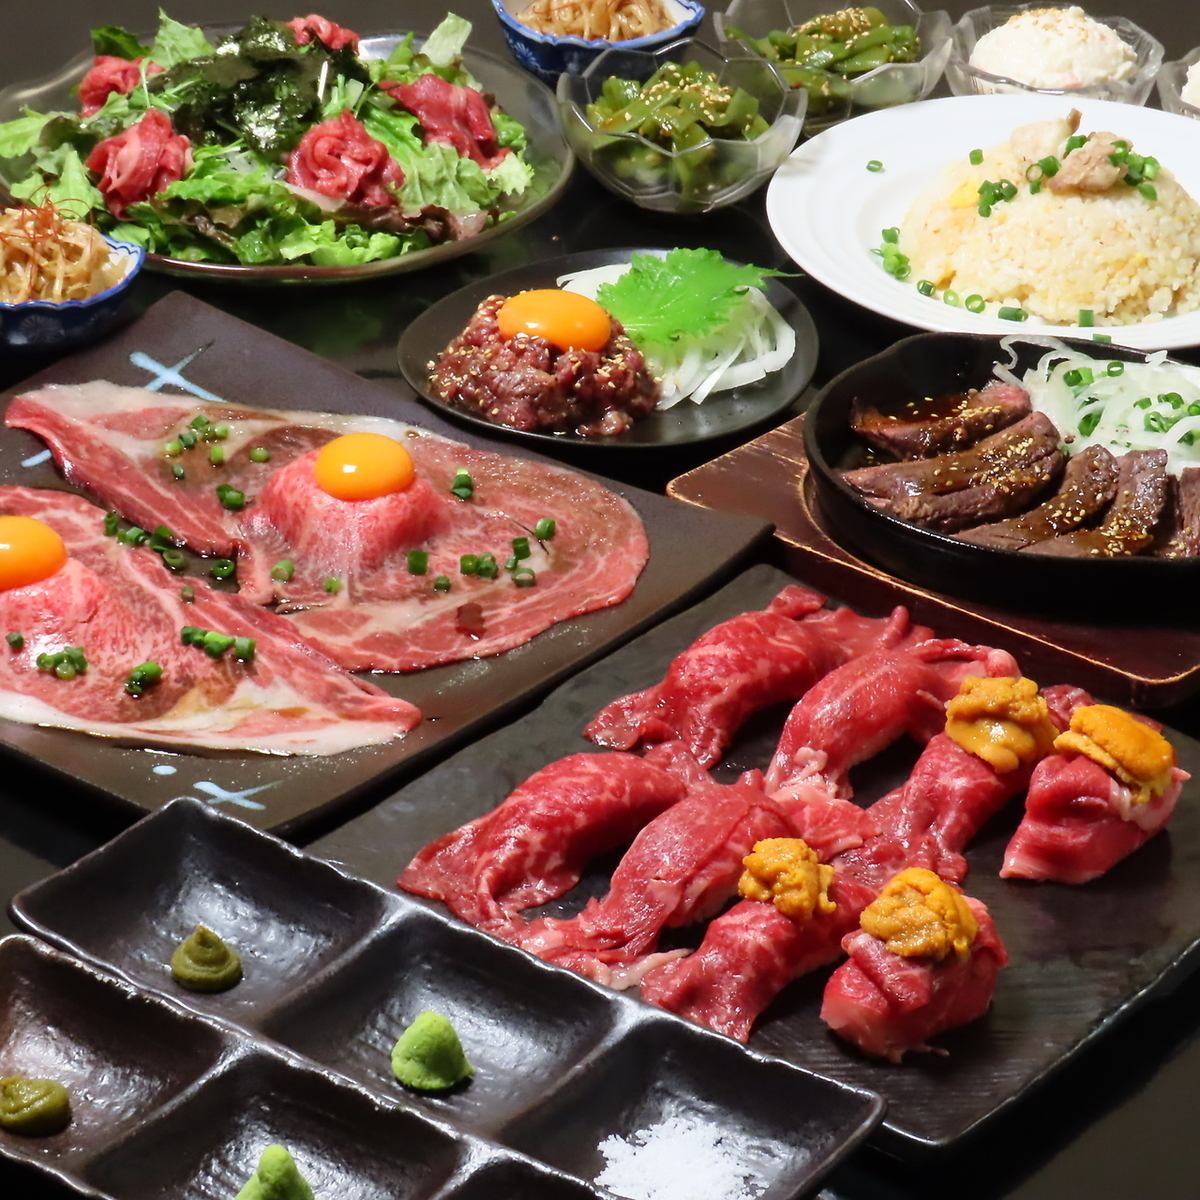 享受严选黑毛和牛和海鲜的奢华“极限套餐”7,000日元